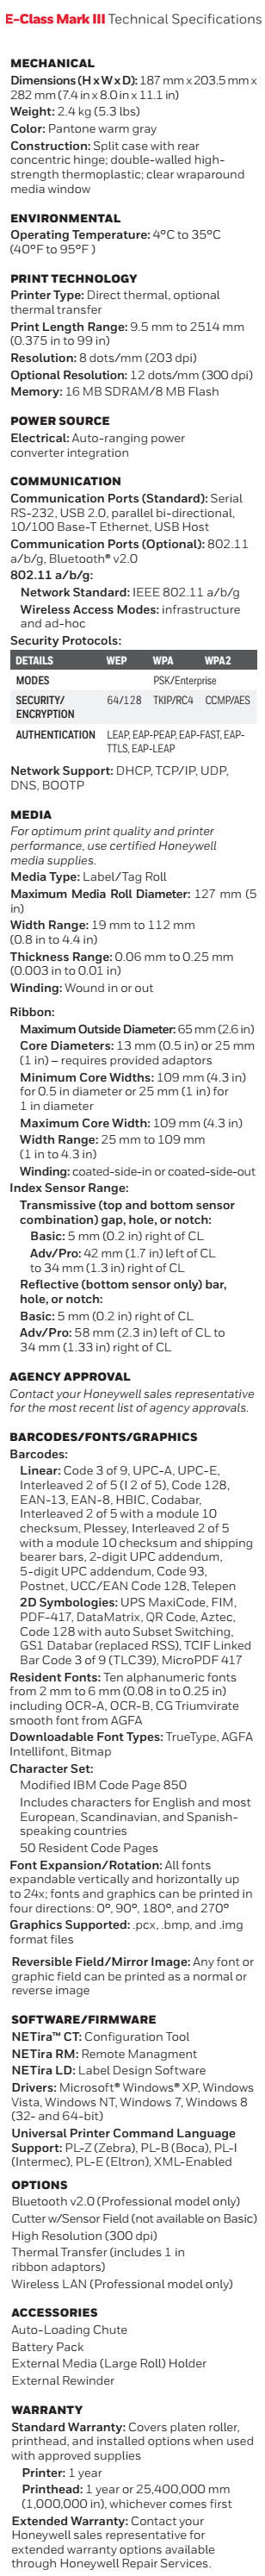 Honeywell E-Class Mark III Desktop Barcode Printer Data sheet